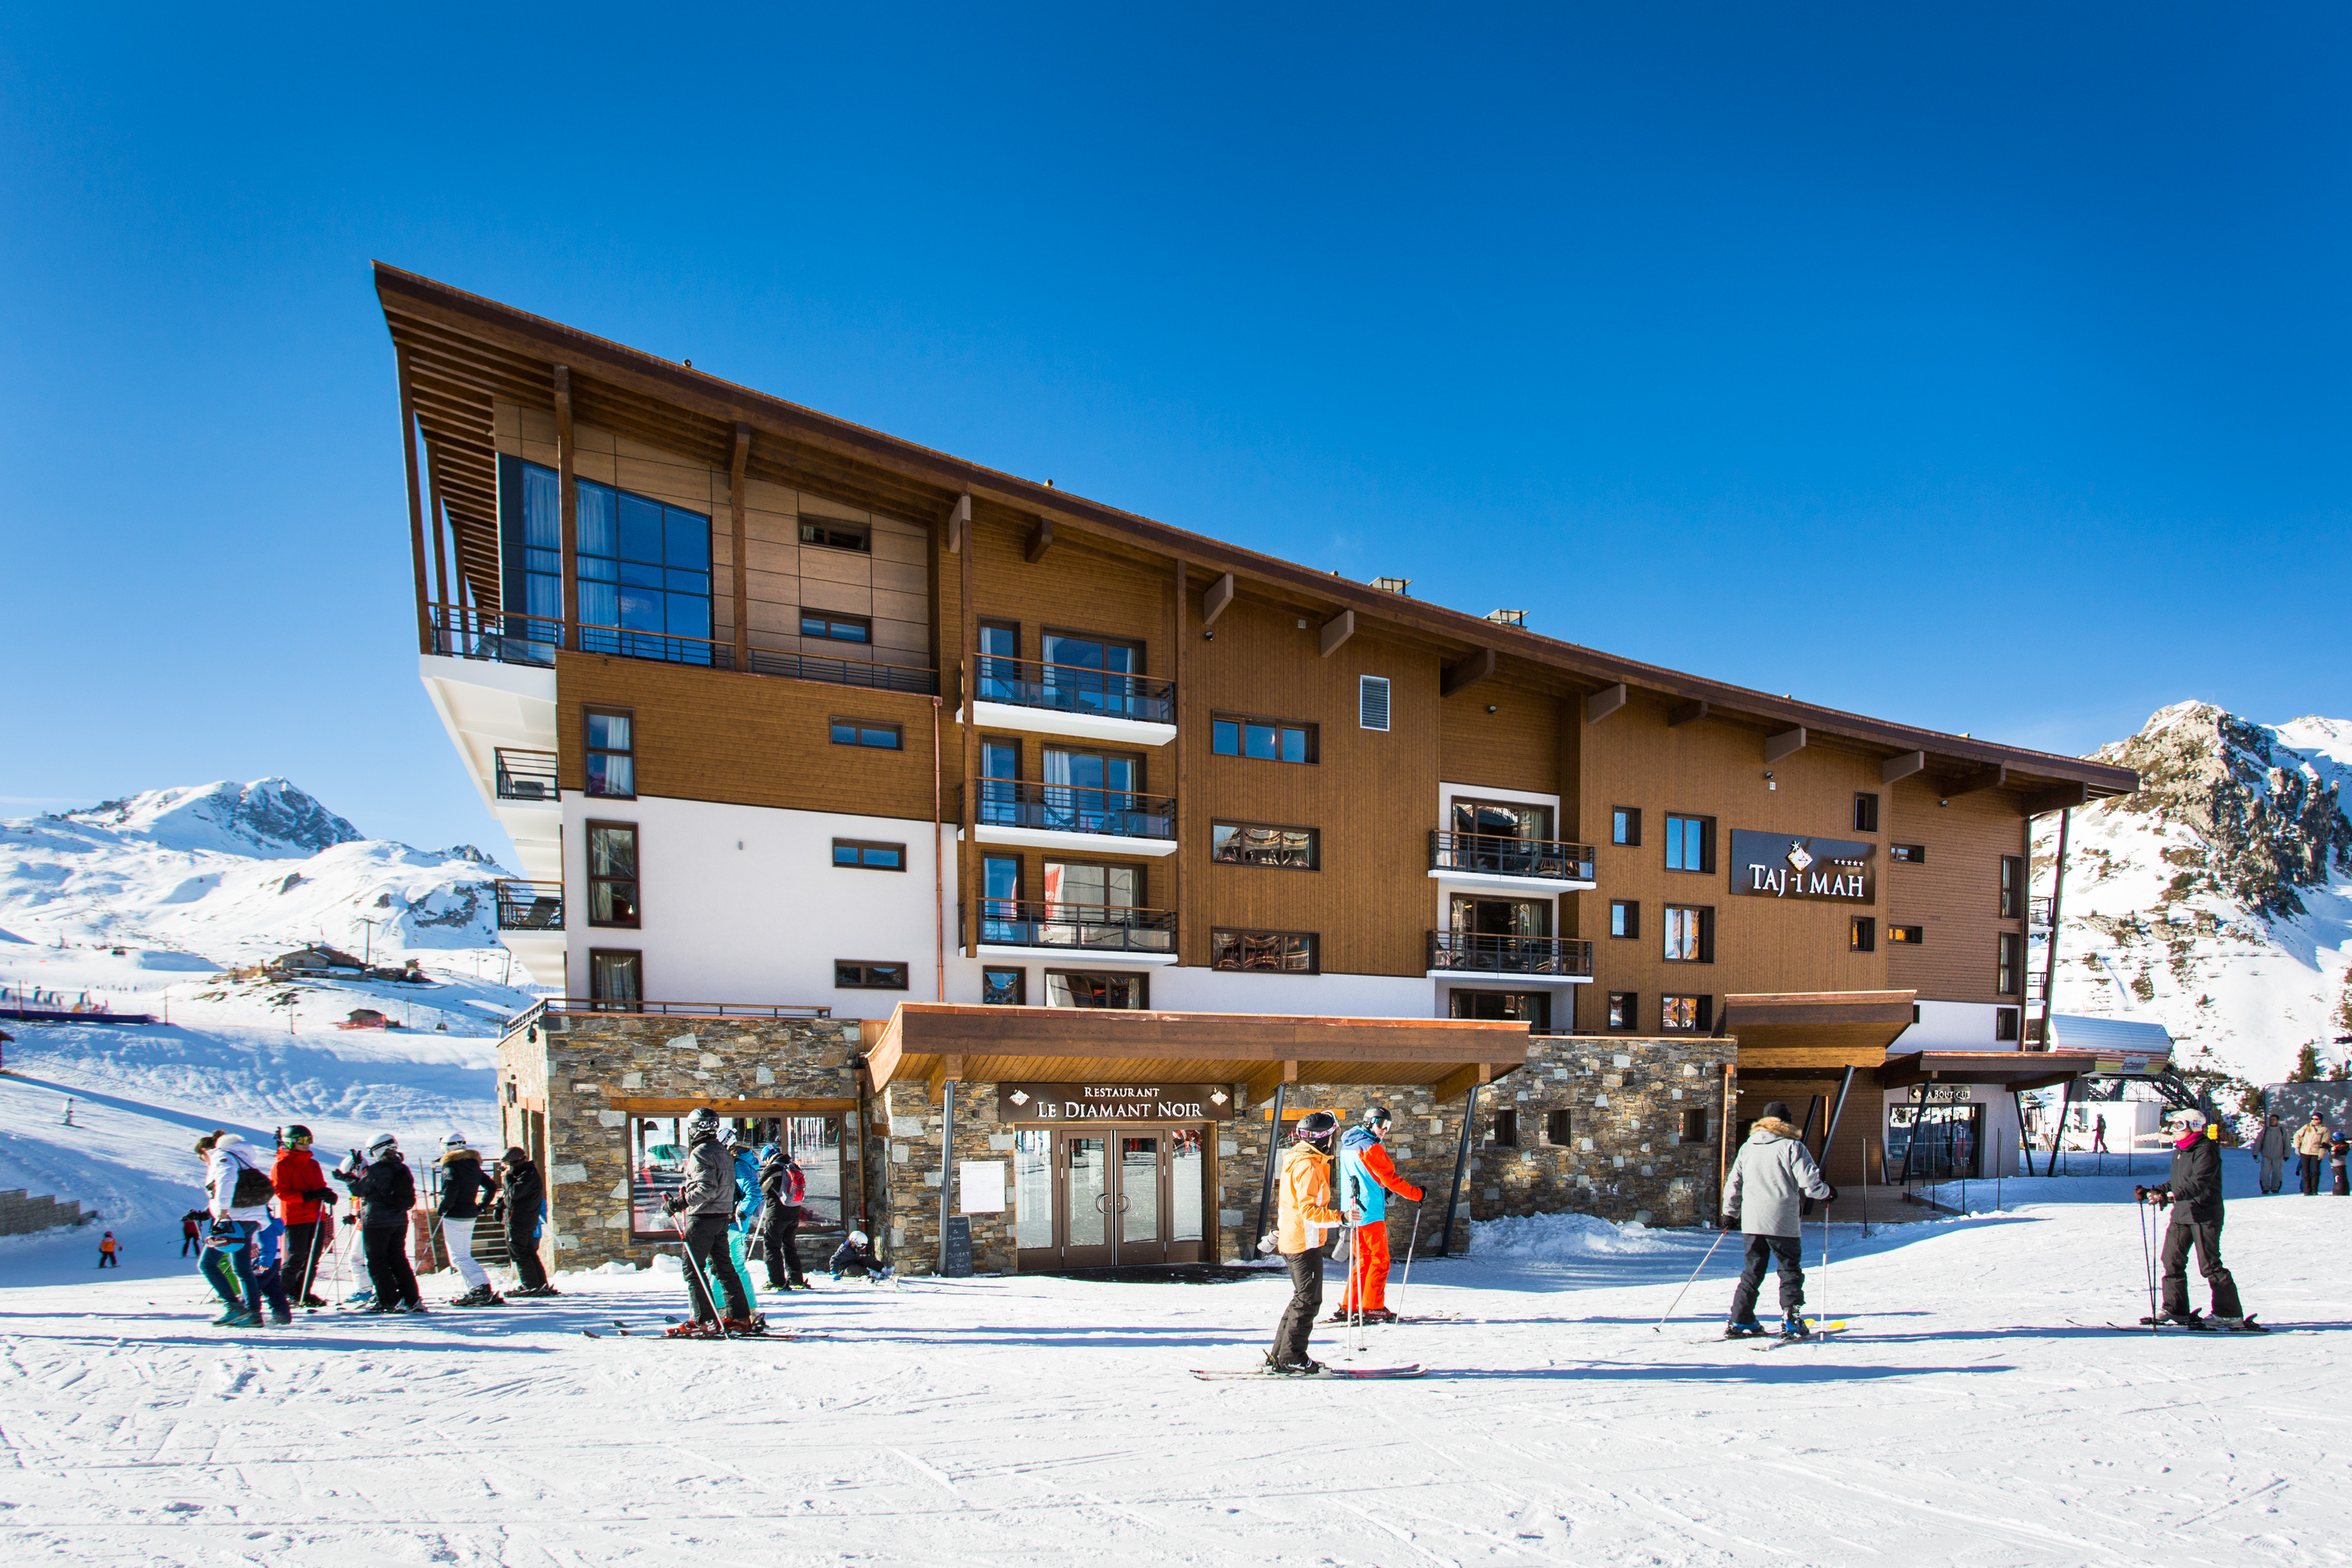 Con vistas al Mont Blanc, el hotel Taj-I Mah está ubicado en la estación de esquí francesa de Les Arcs y es una de las propiedades del grupo alpino Les Etincelles.